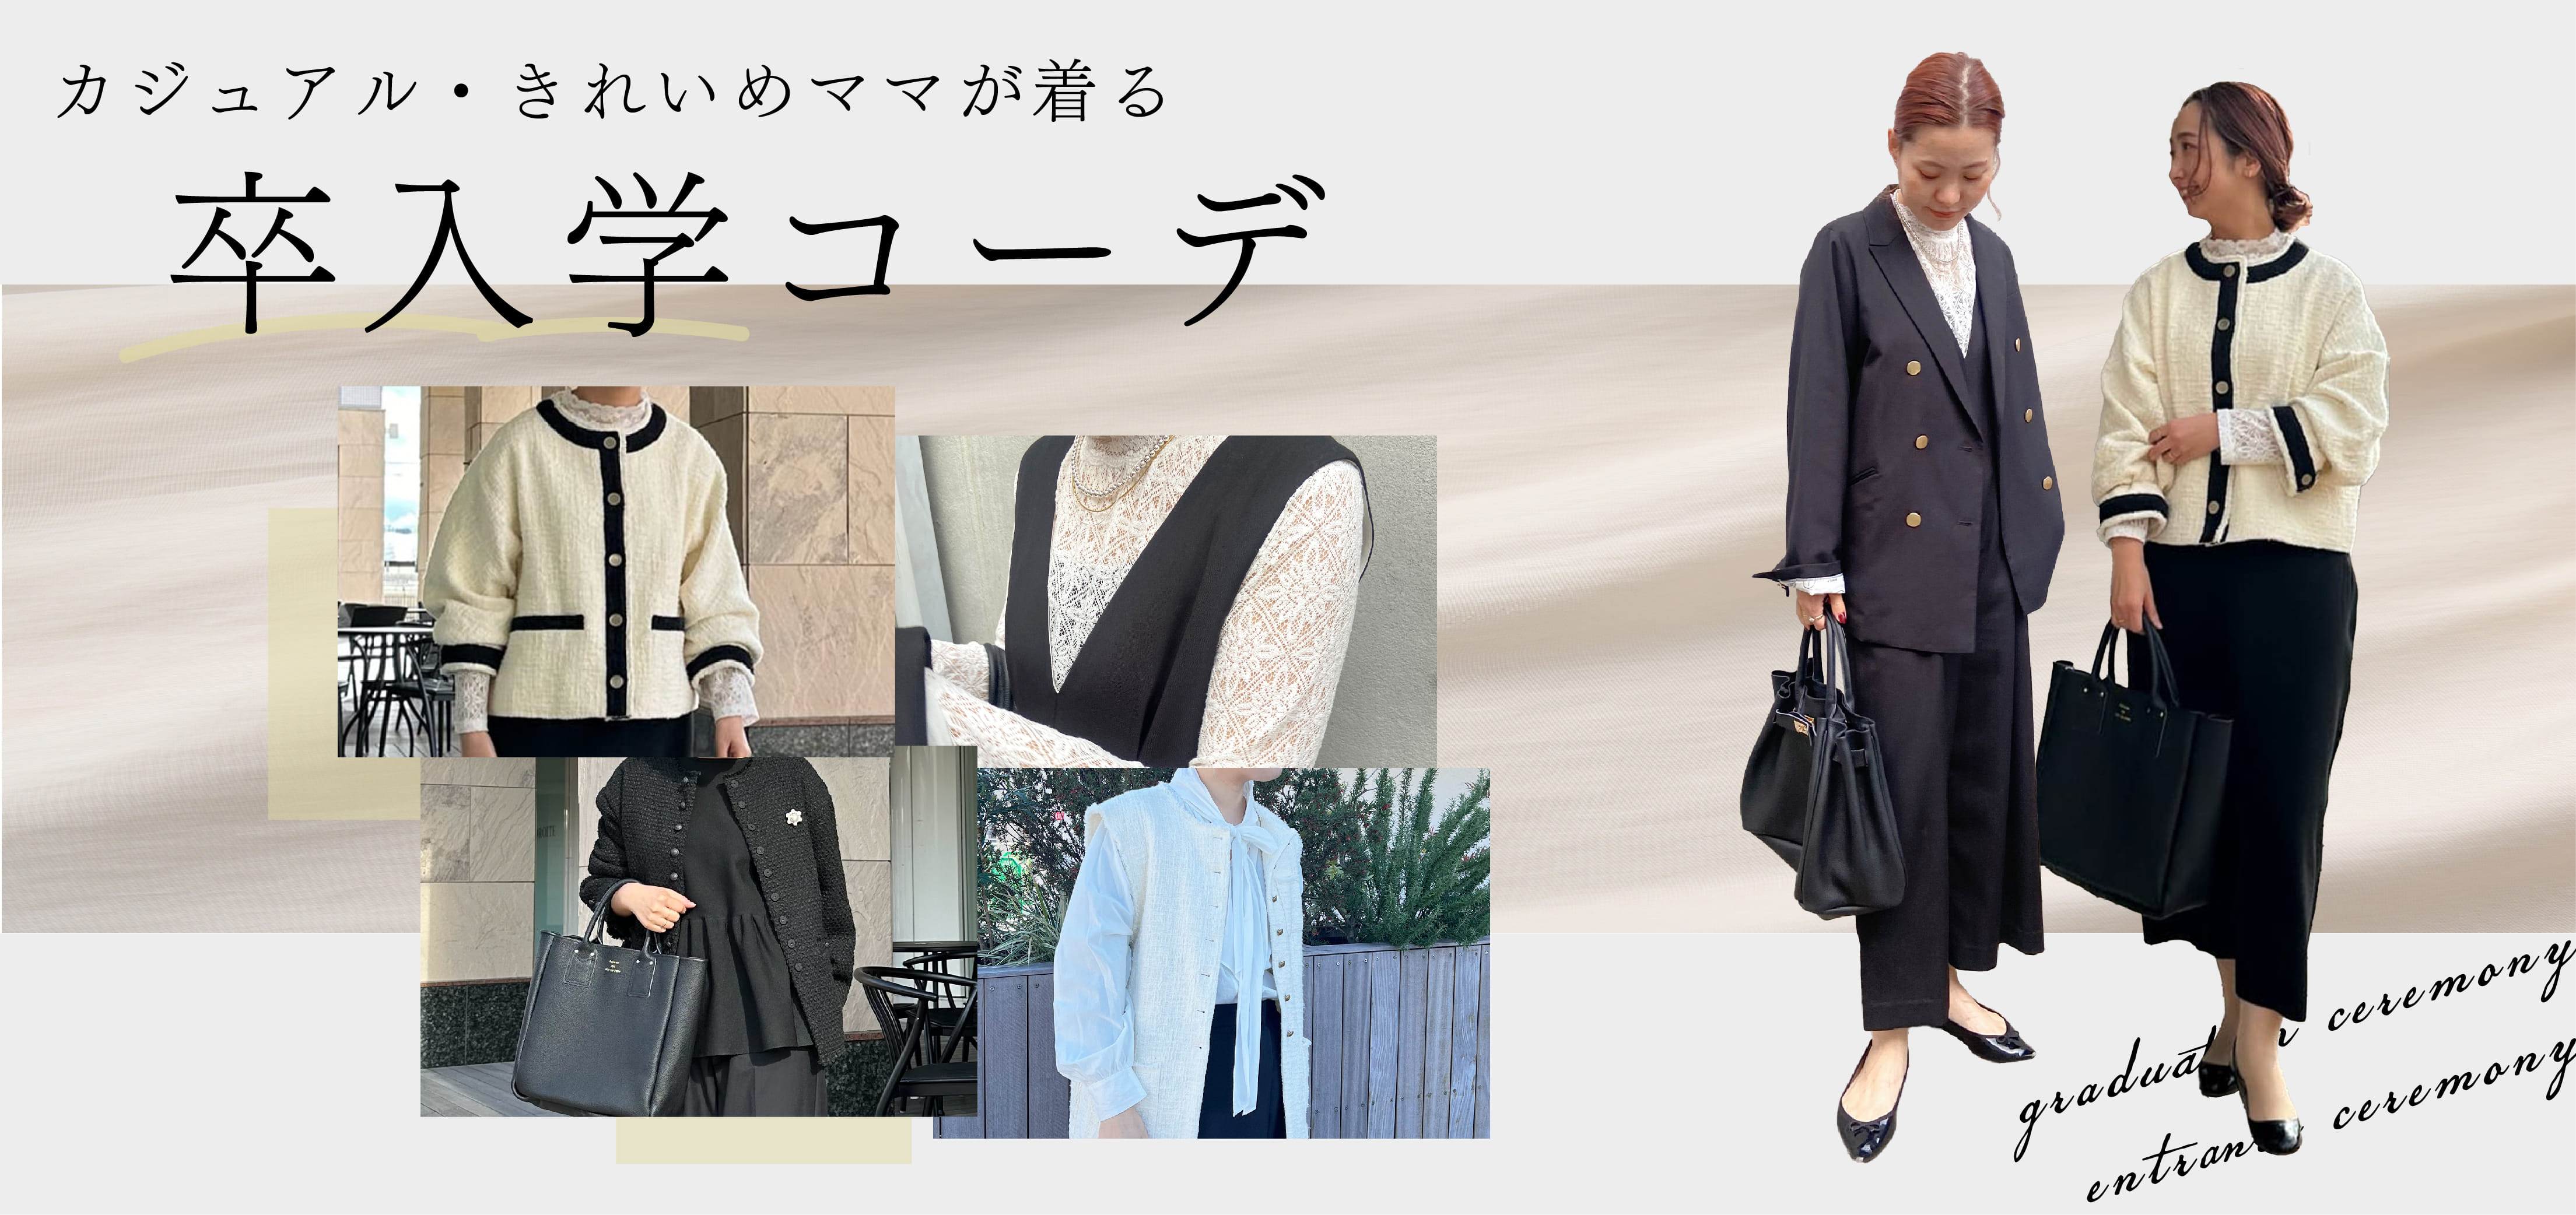 【PUAL CE CIN】カジュアル・キレイめママが着る卒入学コーデ